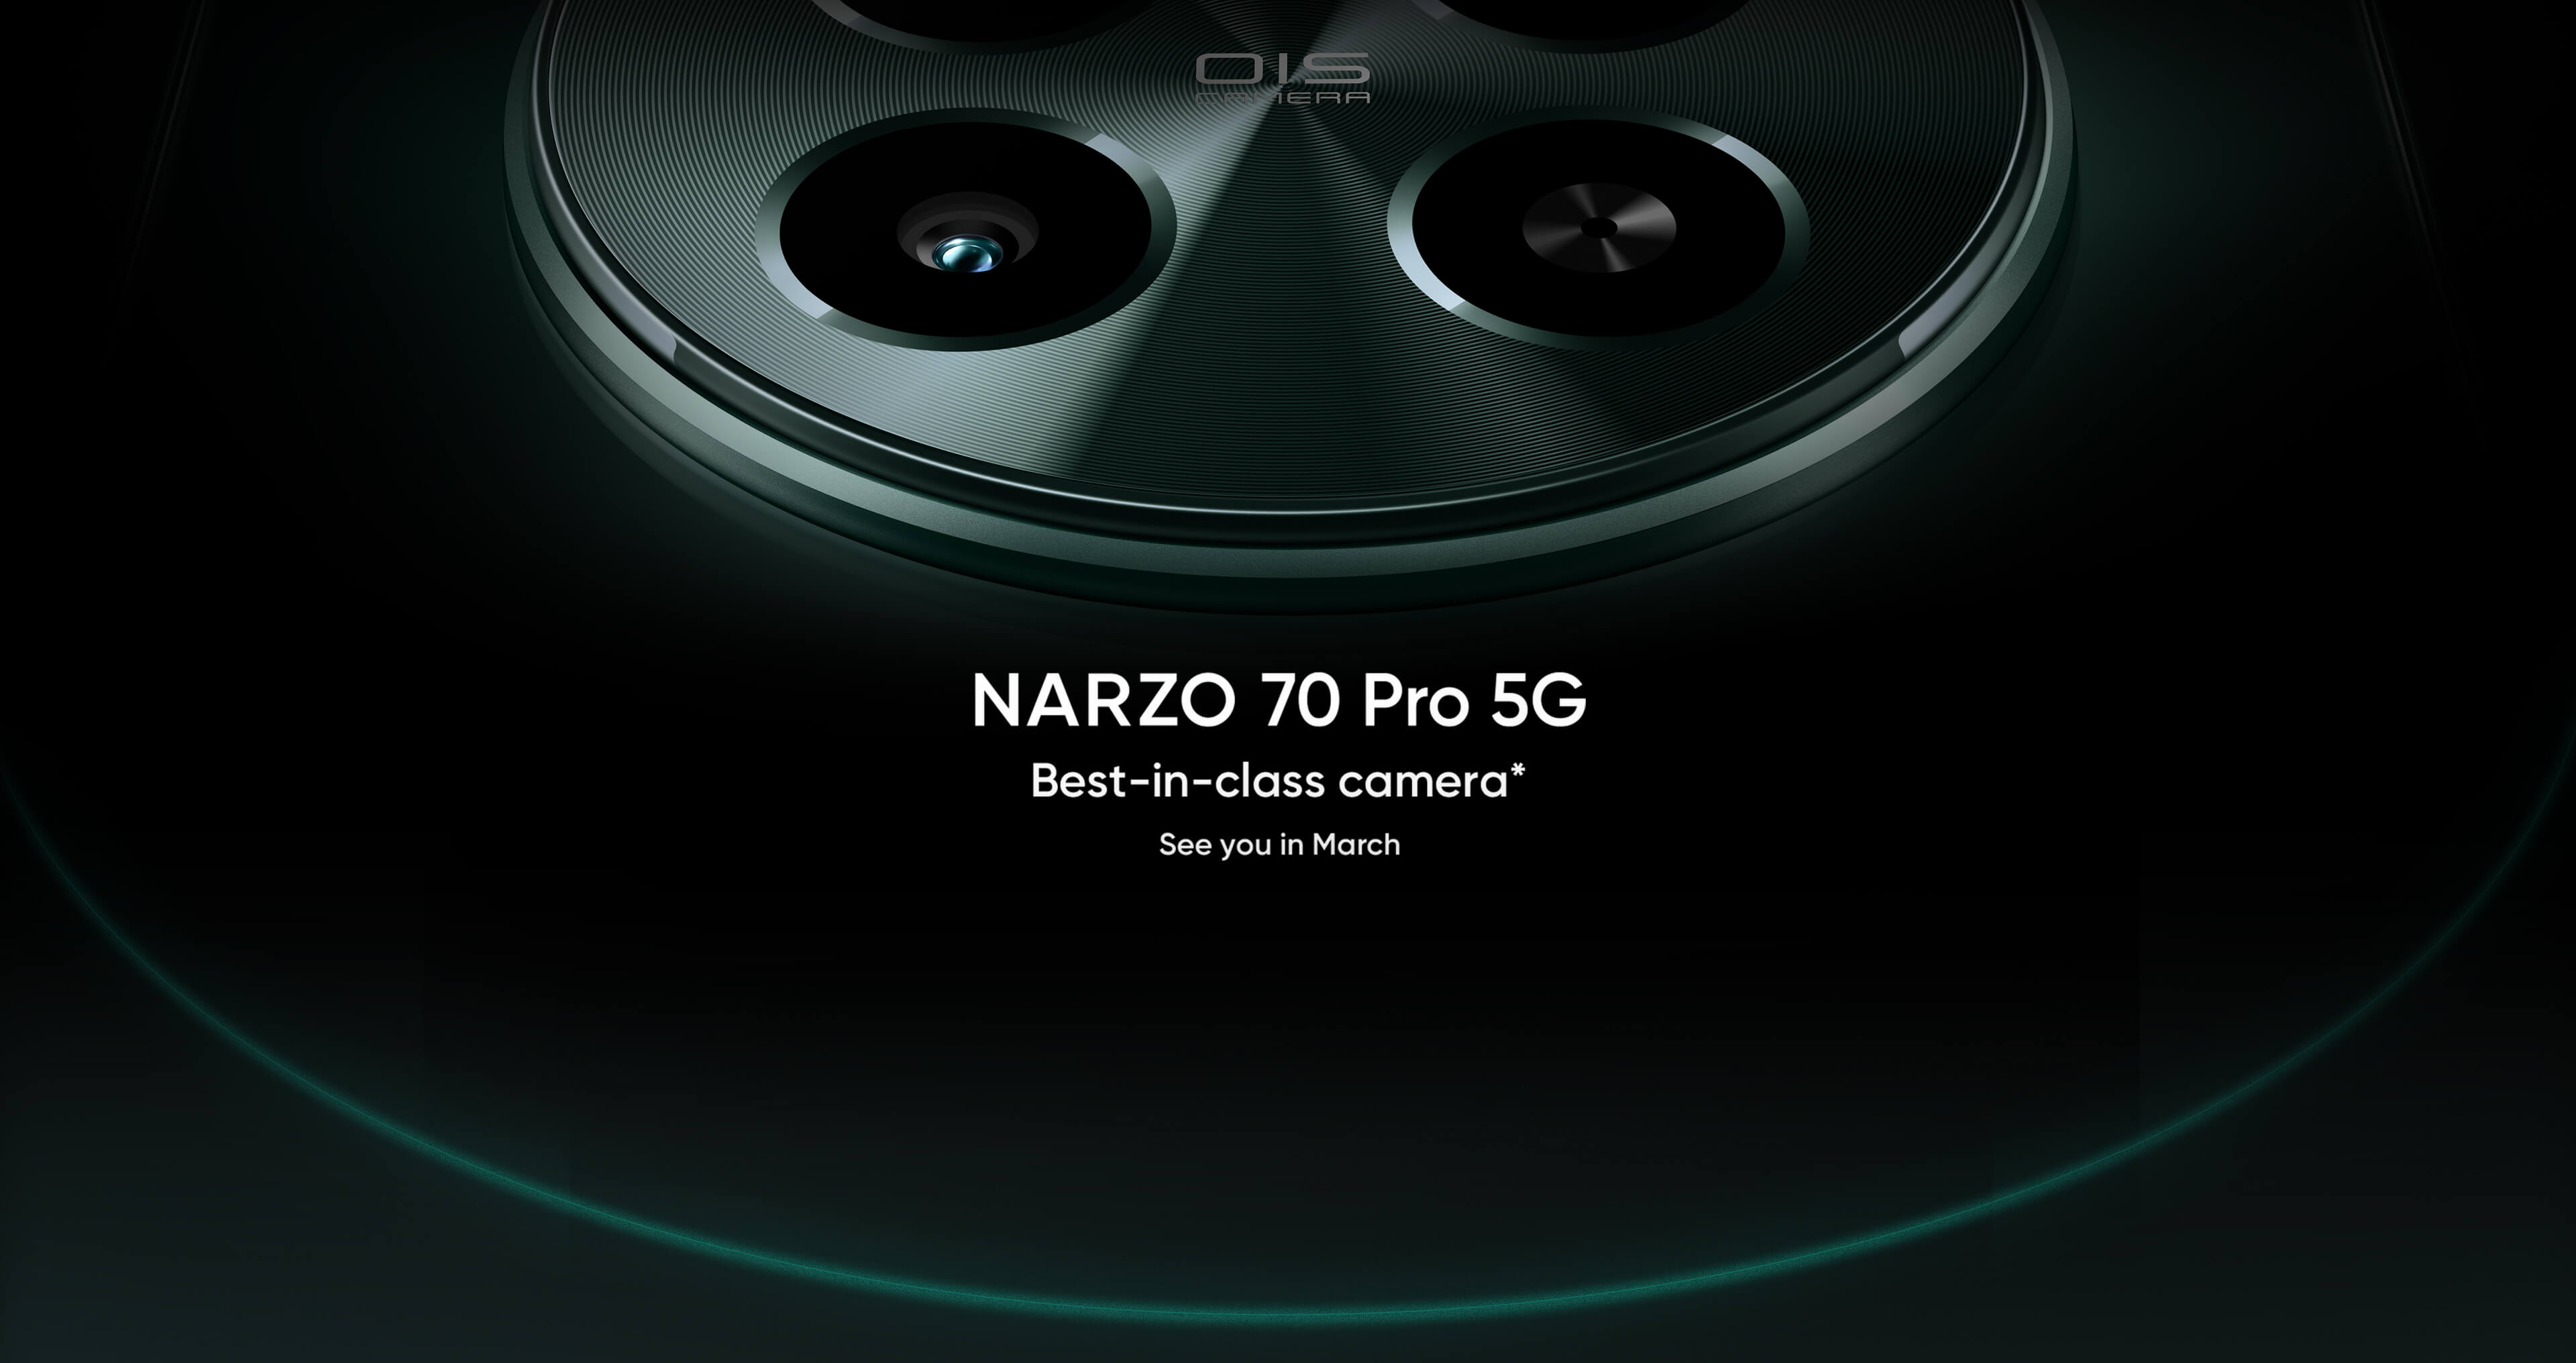 Det är officiellt: realme kommer att presentera Narzo 70 Pro 5G med en 50 MP Sony IMX890 huvudkamera i mars